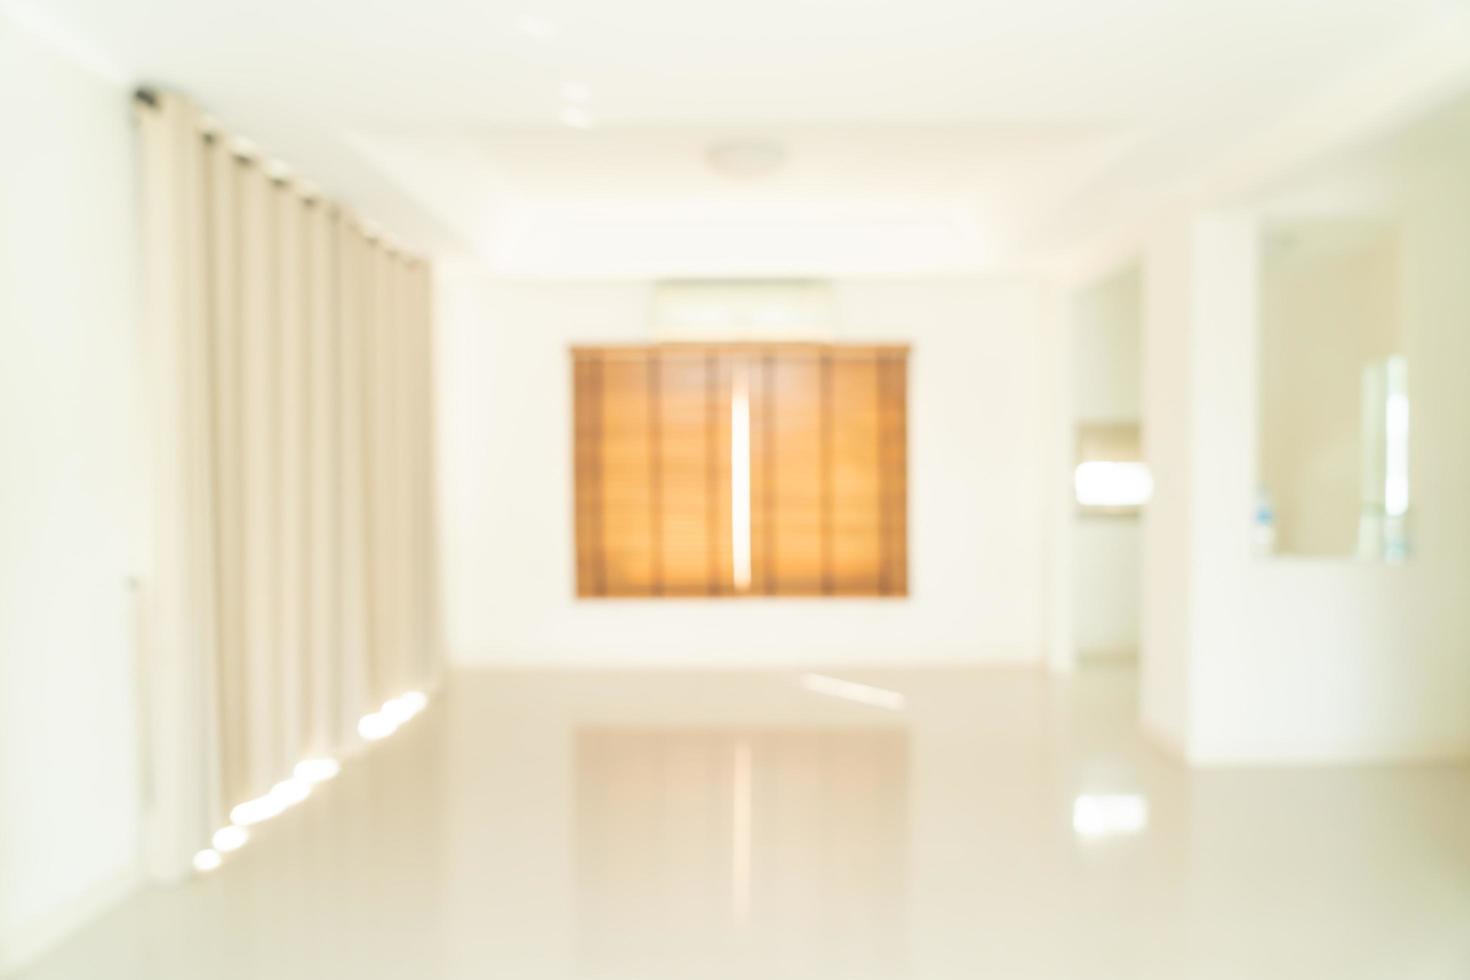 abstrakt suddighet tomt rum i ett hus för bakgrund foto